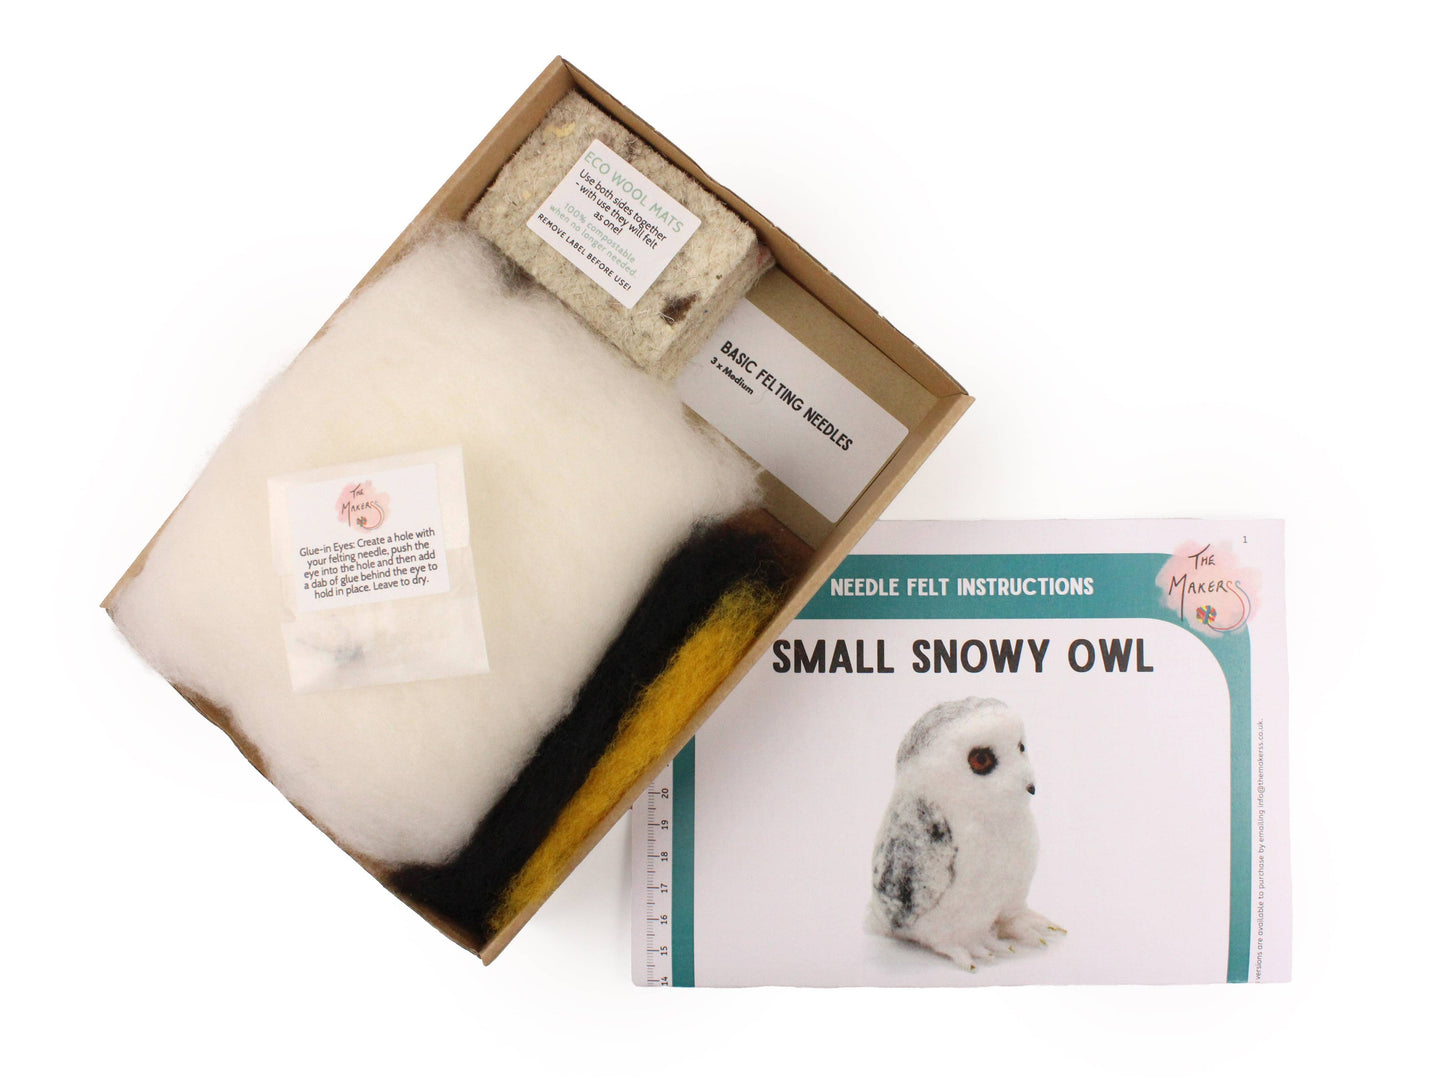 Snowy Owl Small Needle Felt Kit